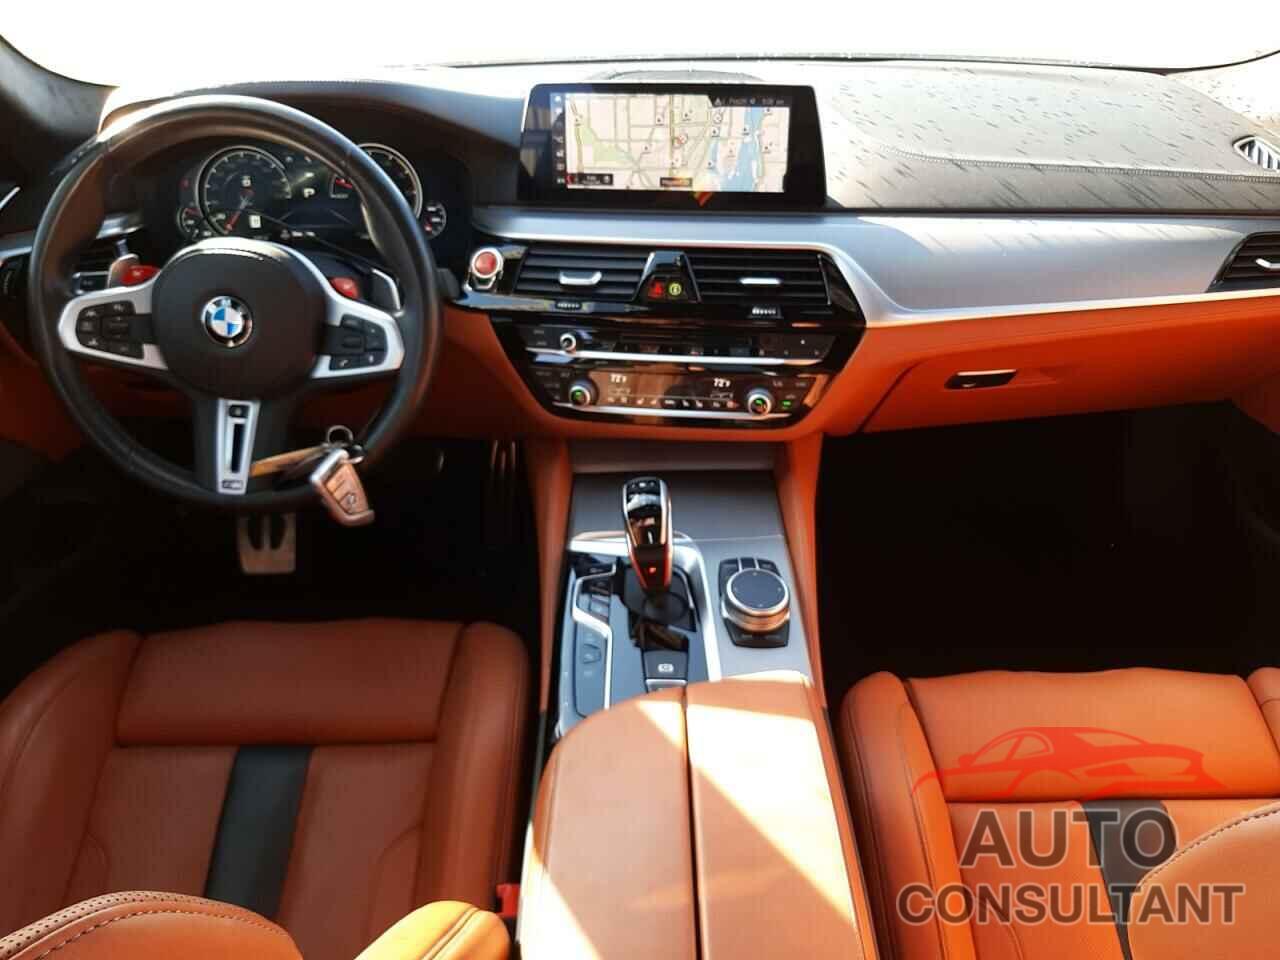 BMW M5 2019 - WBSJF0C55KB446705